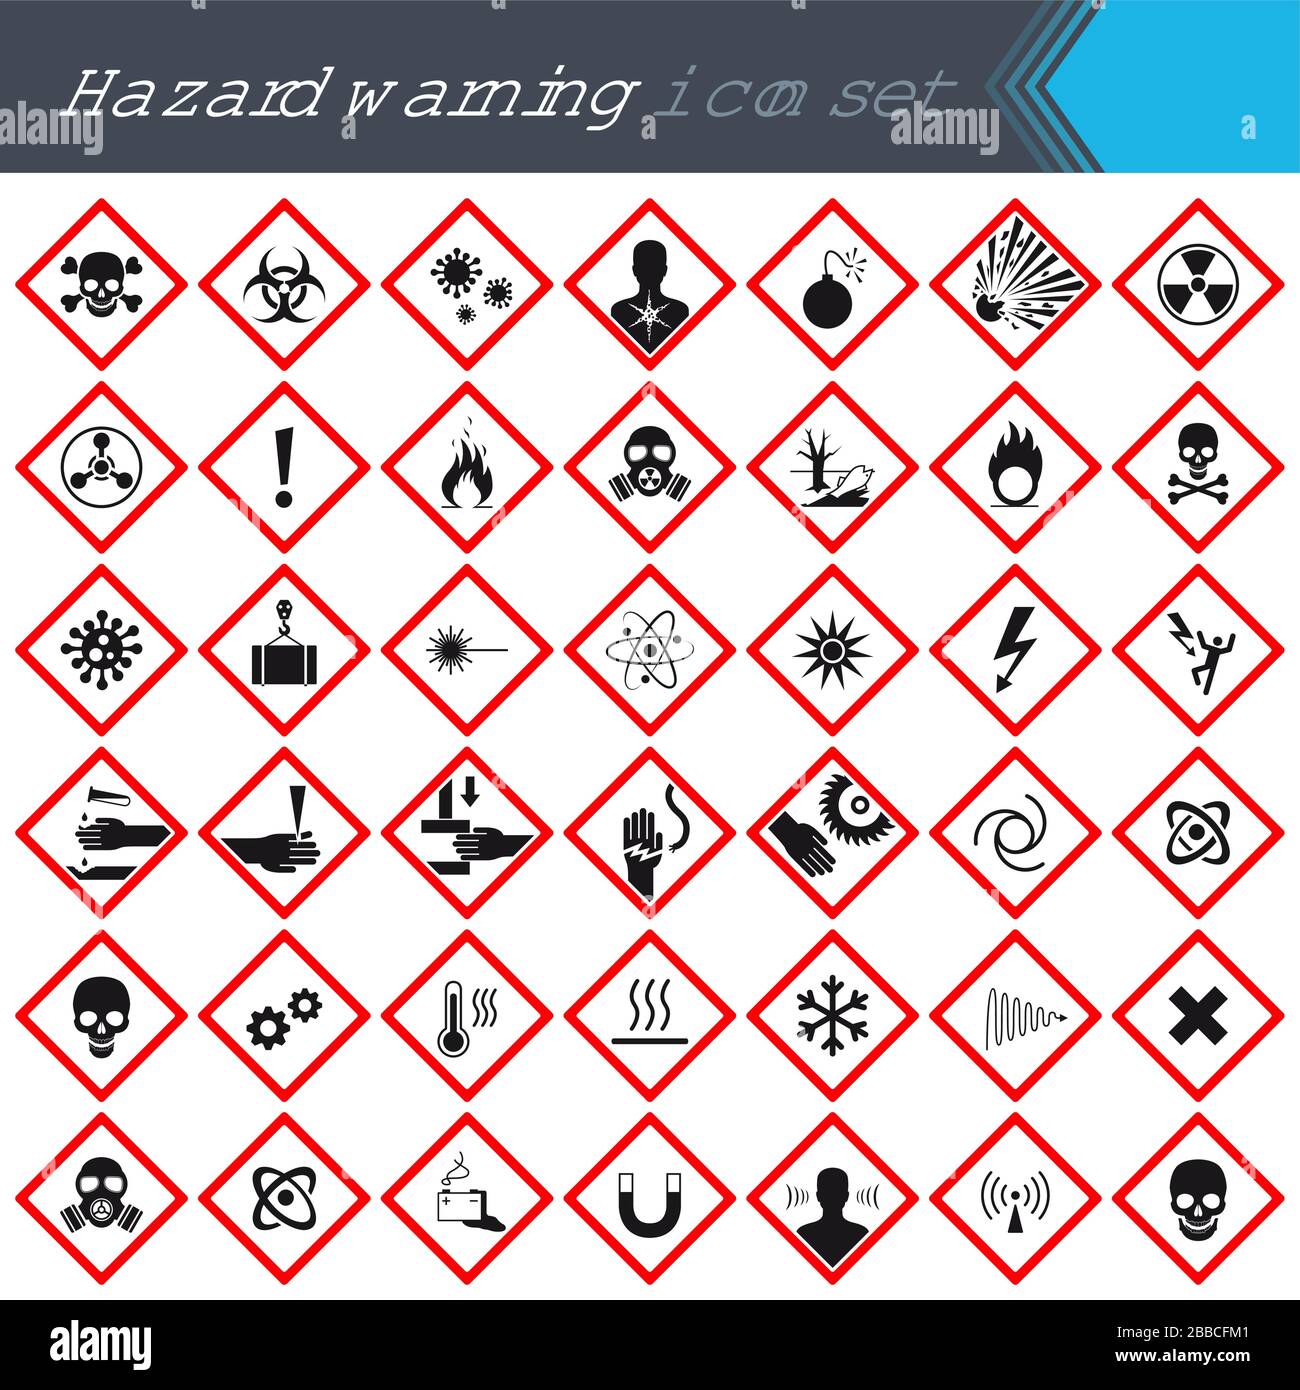 Warnhinweise auf roten Quadraten. Schilder, die auf Gefahr hinweisen. 42 hochwertige Gefahrensymbole und -Elemente. Gefahrensymbole. Vektorgrafiken Stock Vektor